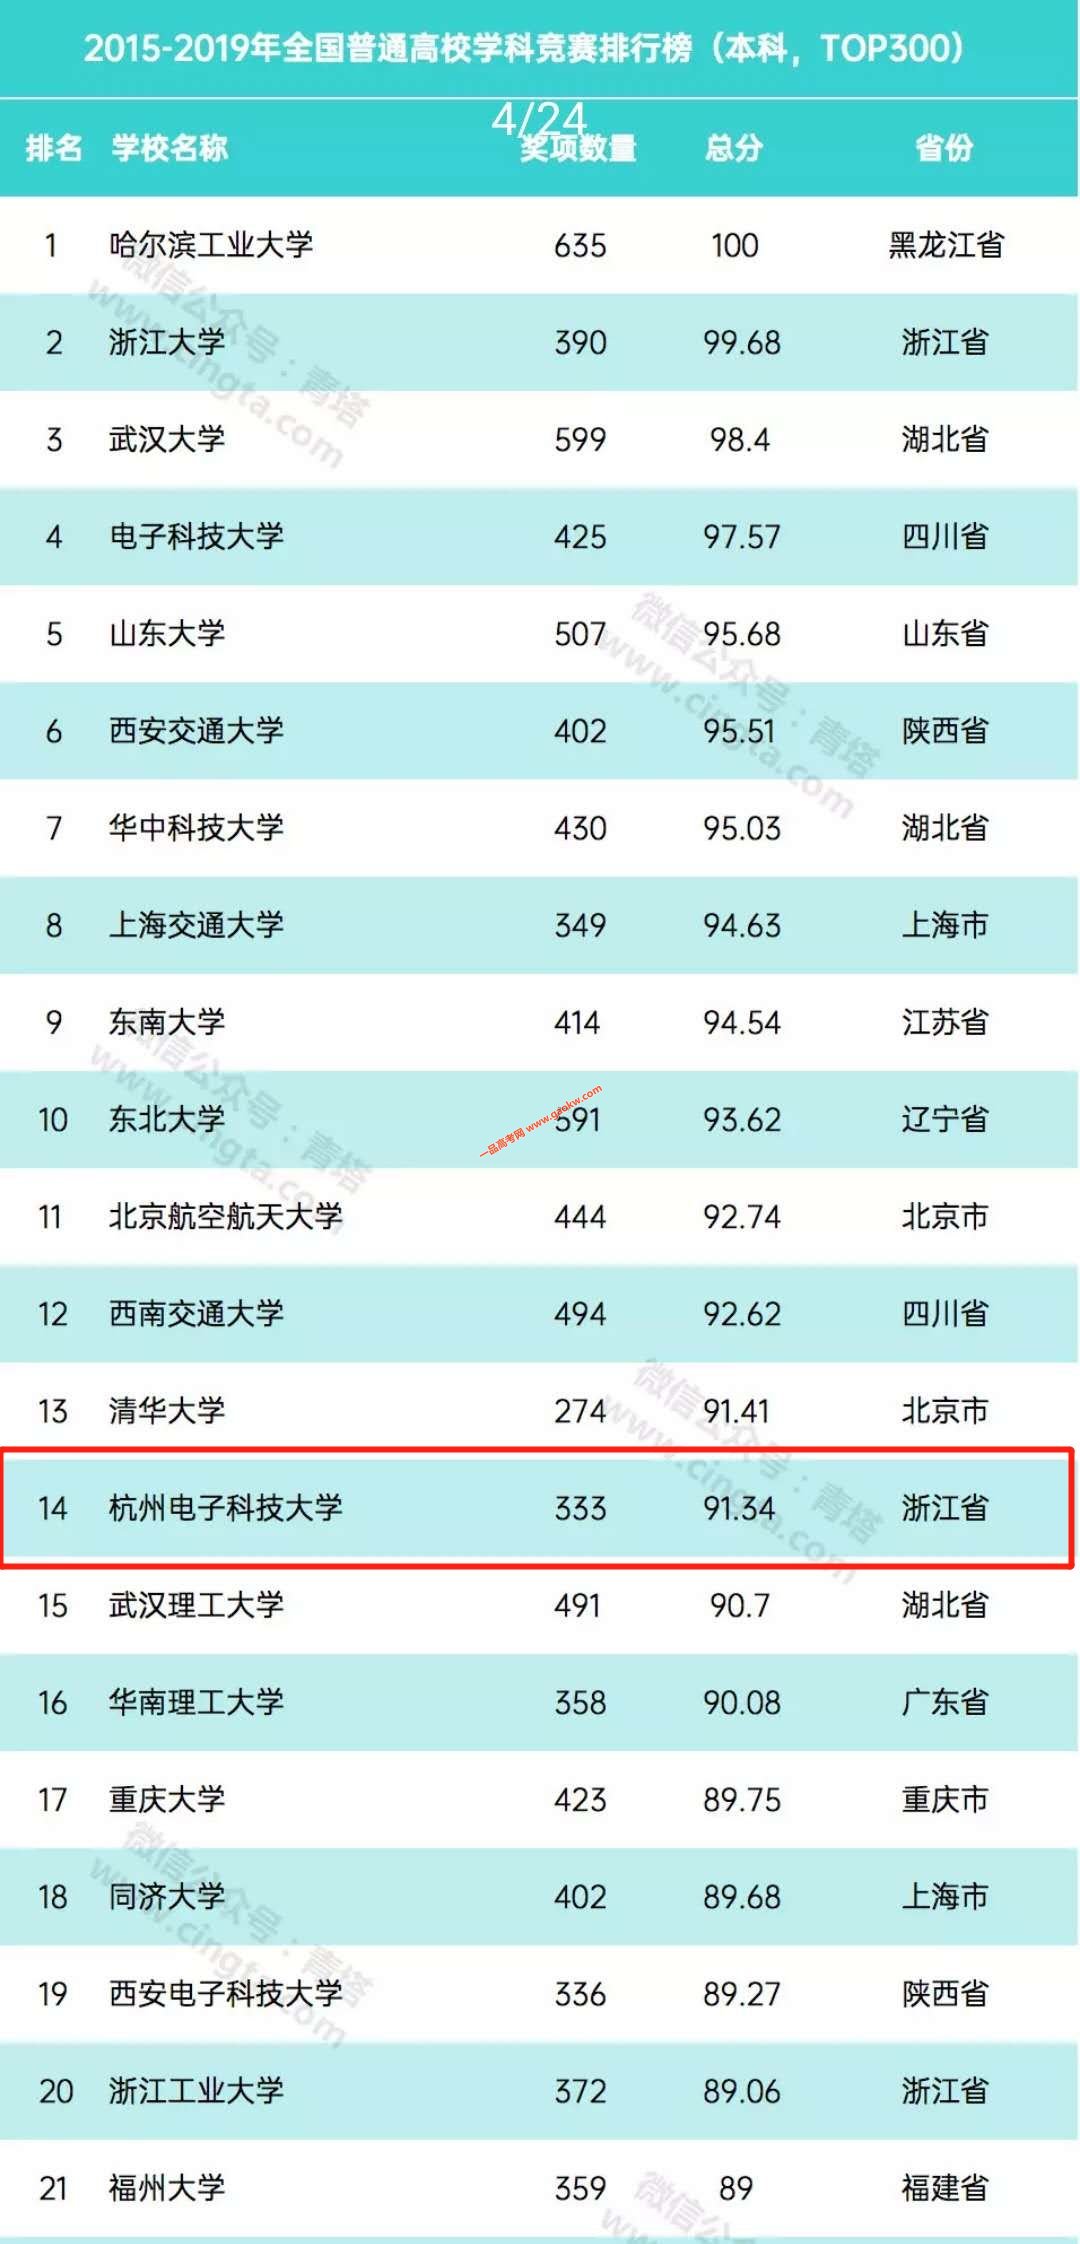 杭州电子科技大学位全国普通高校学科竞赛排行榜第14位